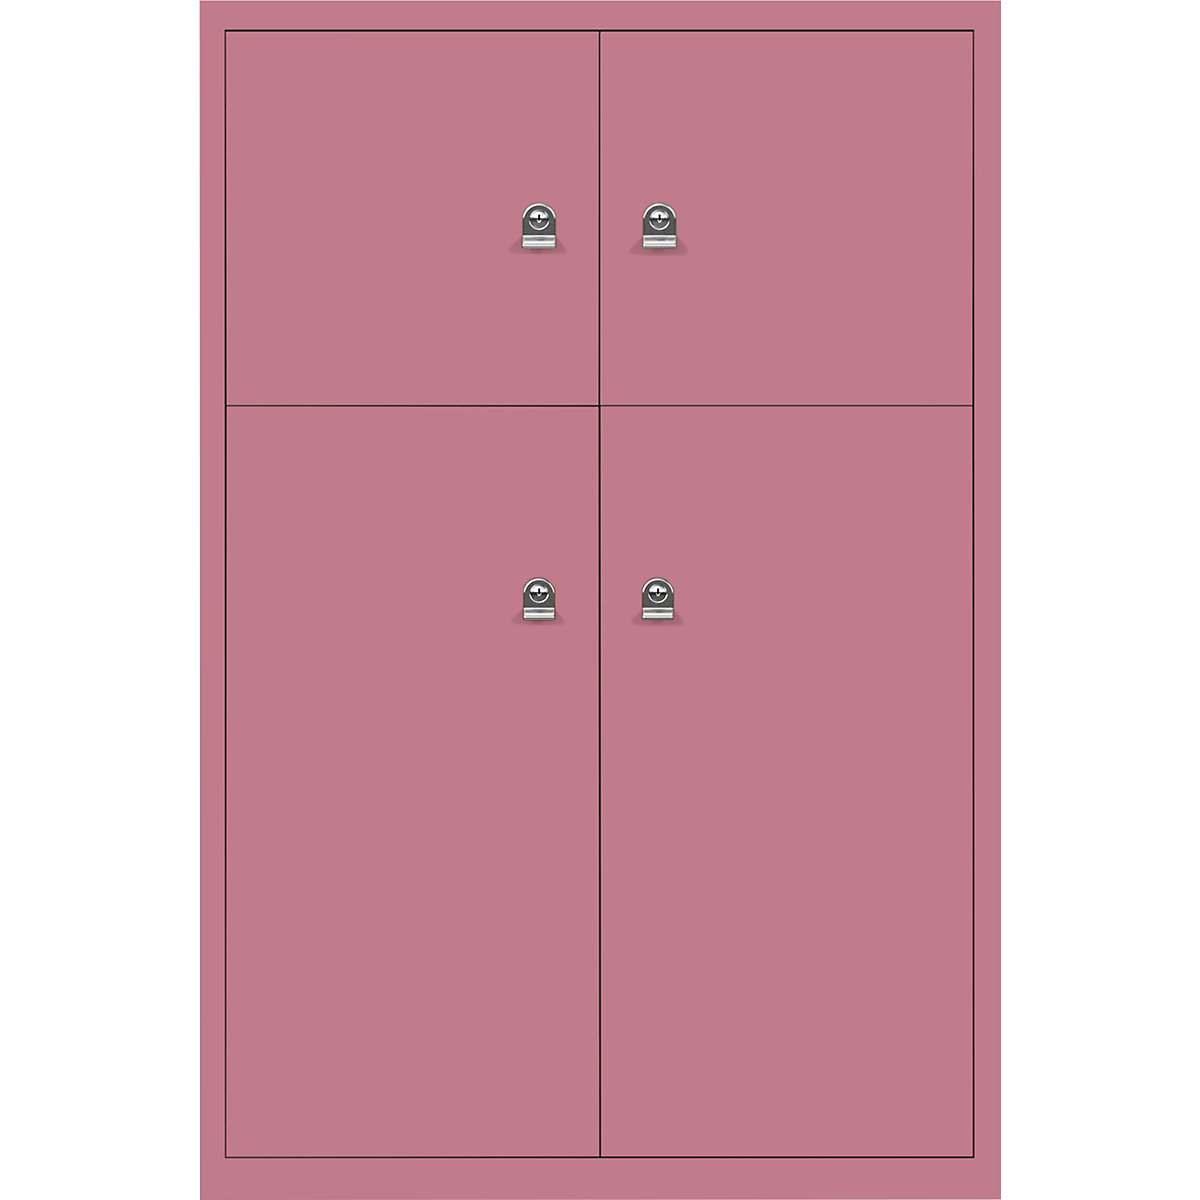 Omara s predelki z zaklepanjem LateralFile™ – BISLEY, 4 predelki z zaklepanjem, višina 2 x 375 mm, 2 x 755 mm, roza barve-3